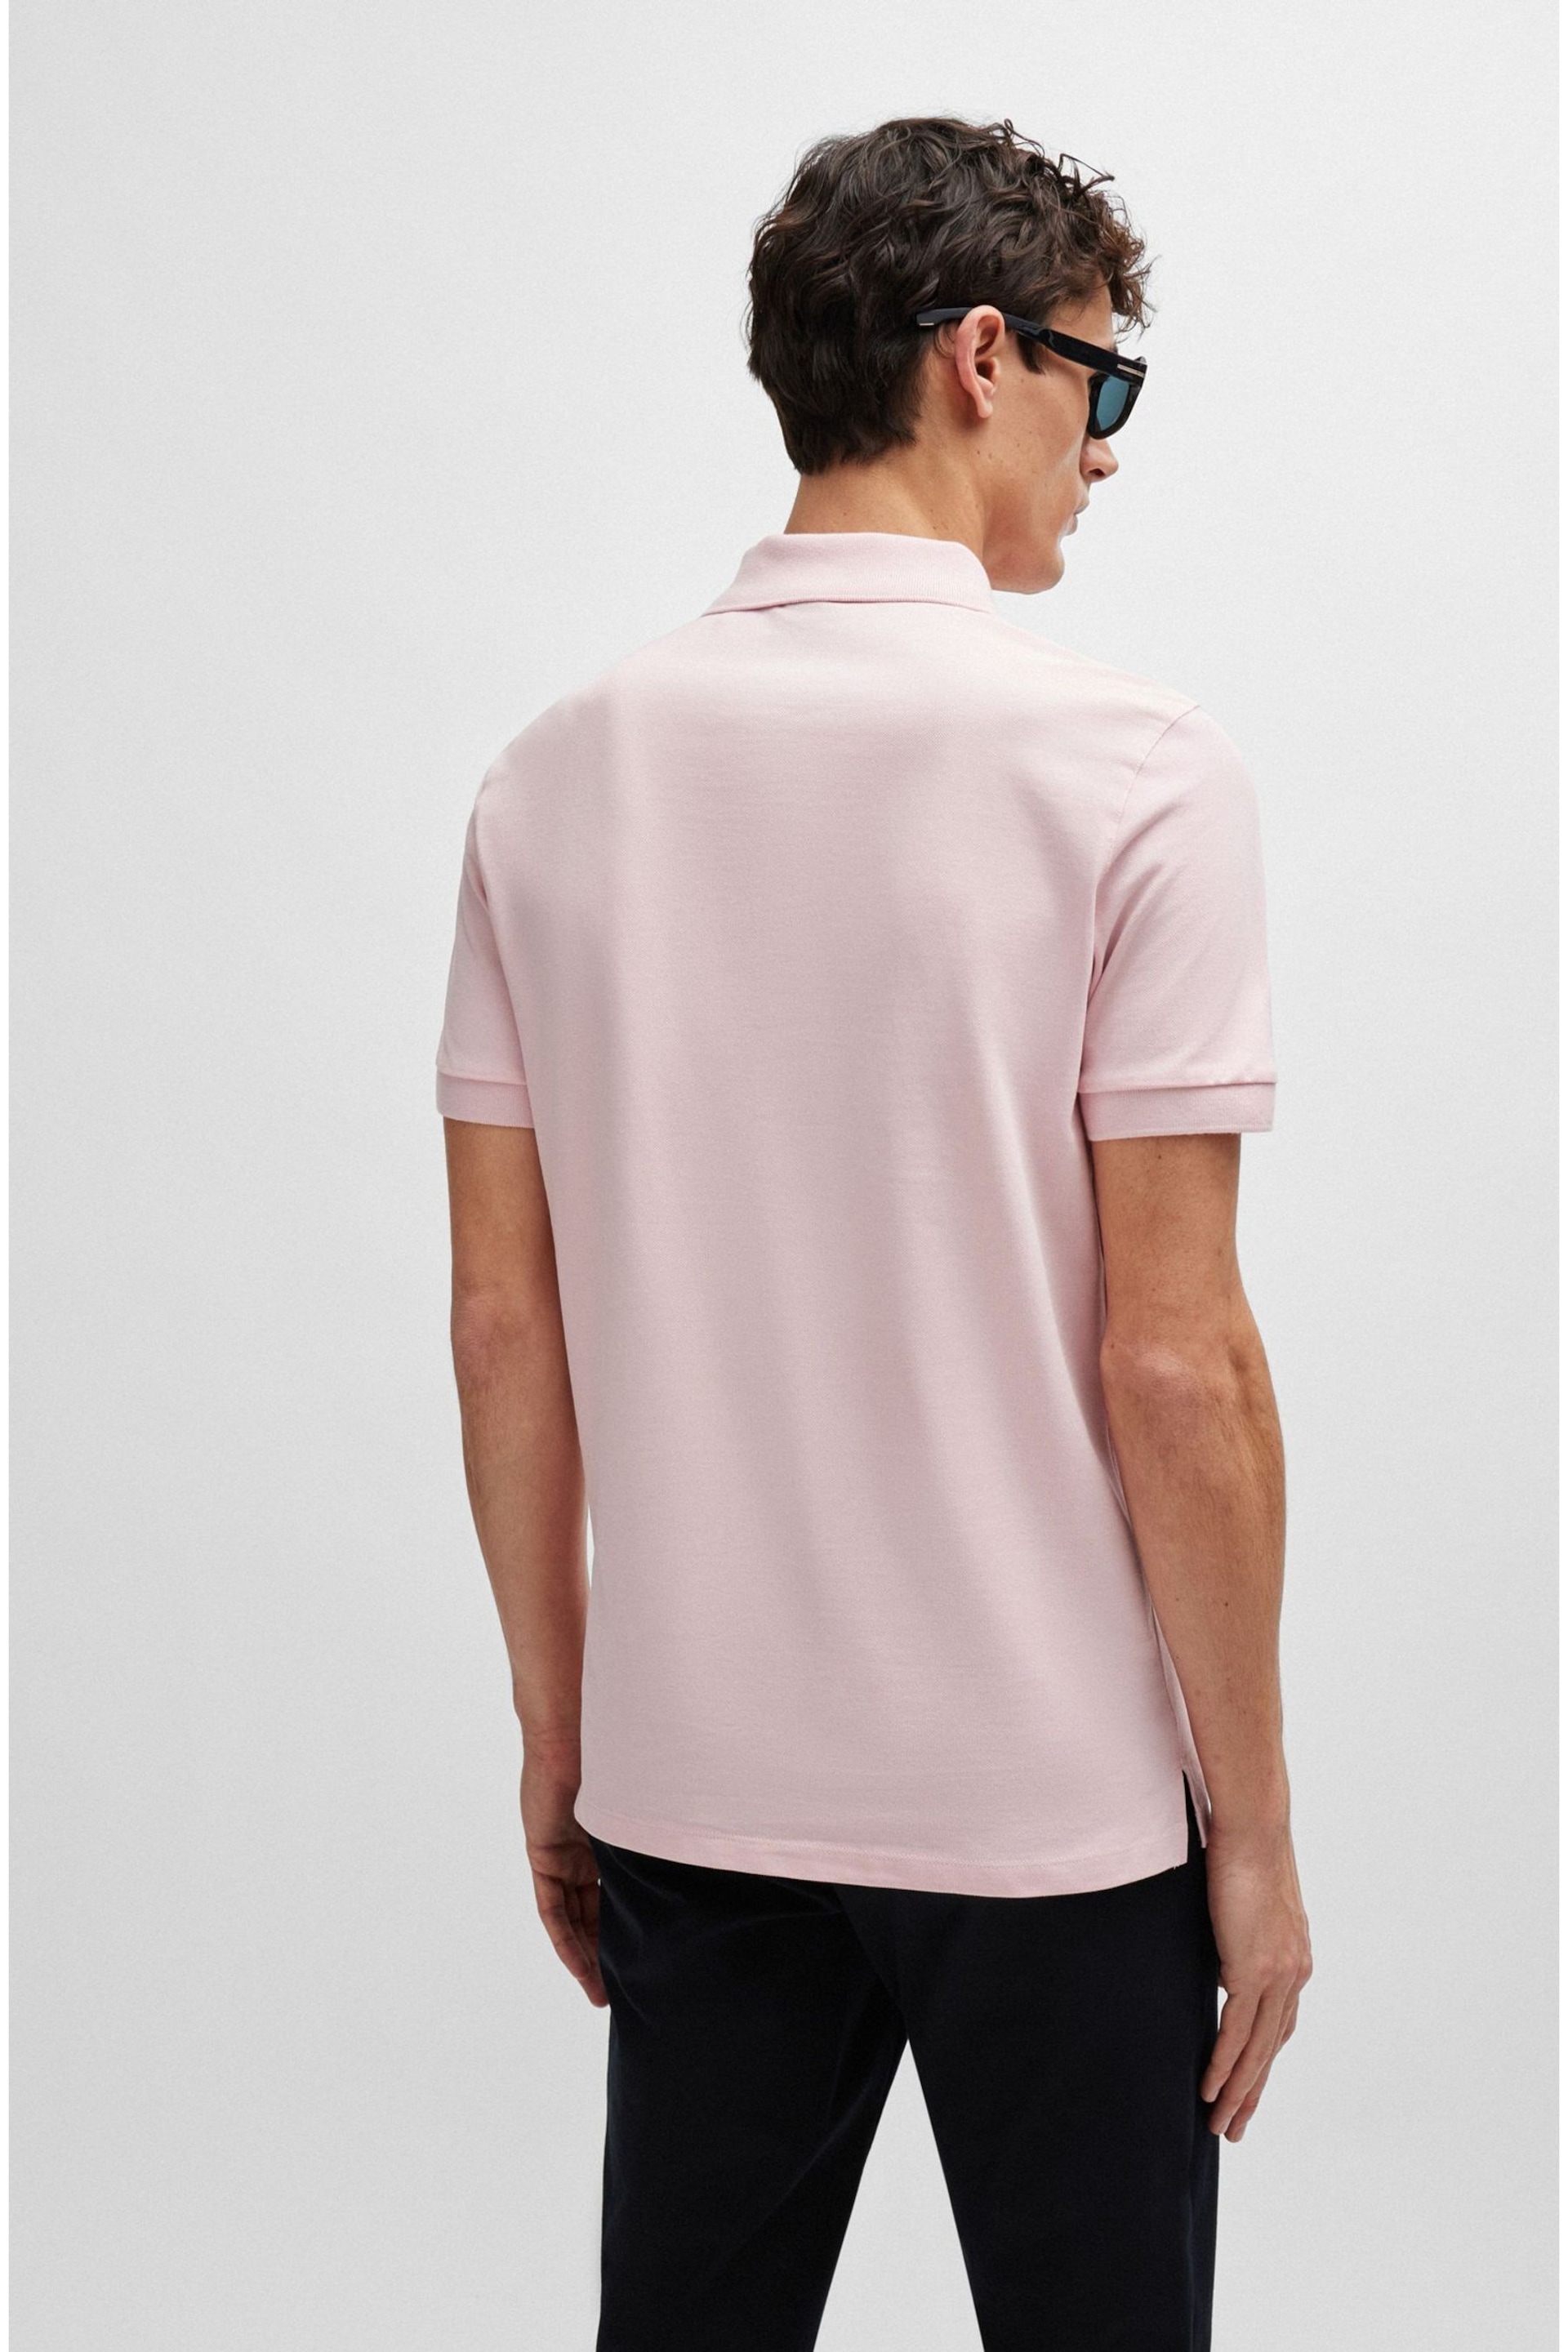 BOSS Pink Pallas Polo Shirt - Image 2 of 5